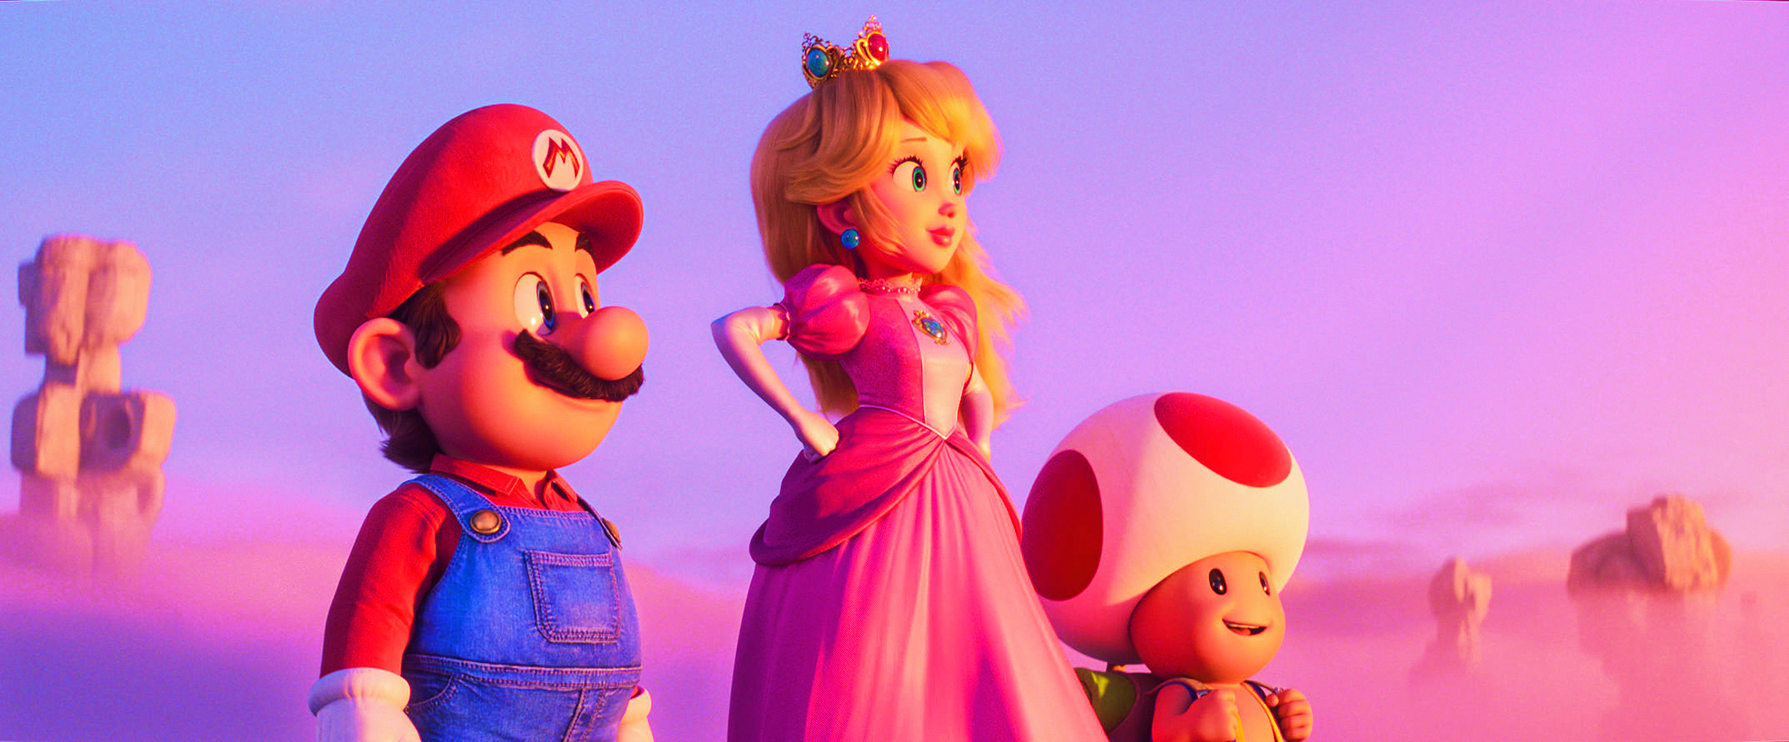 Le film d’animation « Super Mario Bros. », sur les écrans le 5 avril, met en scène tous les personnages clés de l’univers créé par Nintendo, comme la princesse Peach et Toad, le champignon humanoïde. NINTENDO/UNIVERSAL STUDIOS